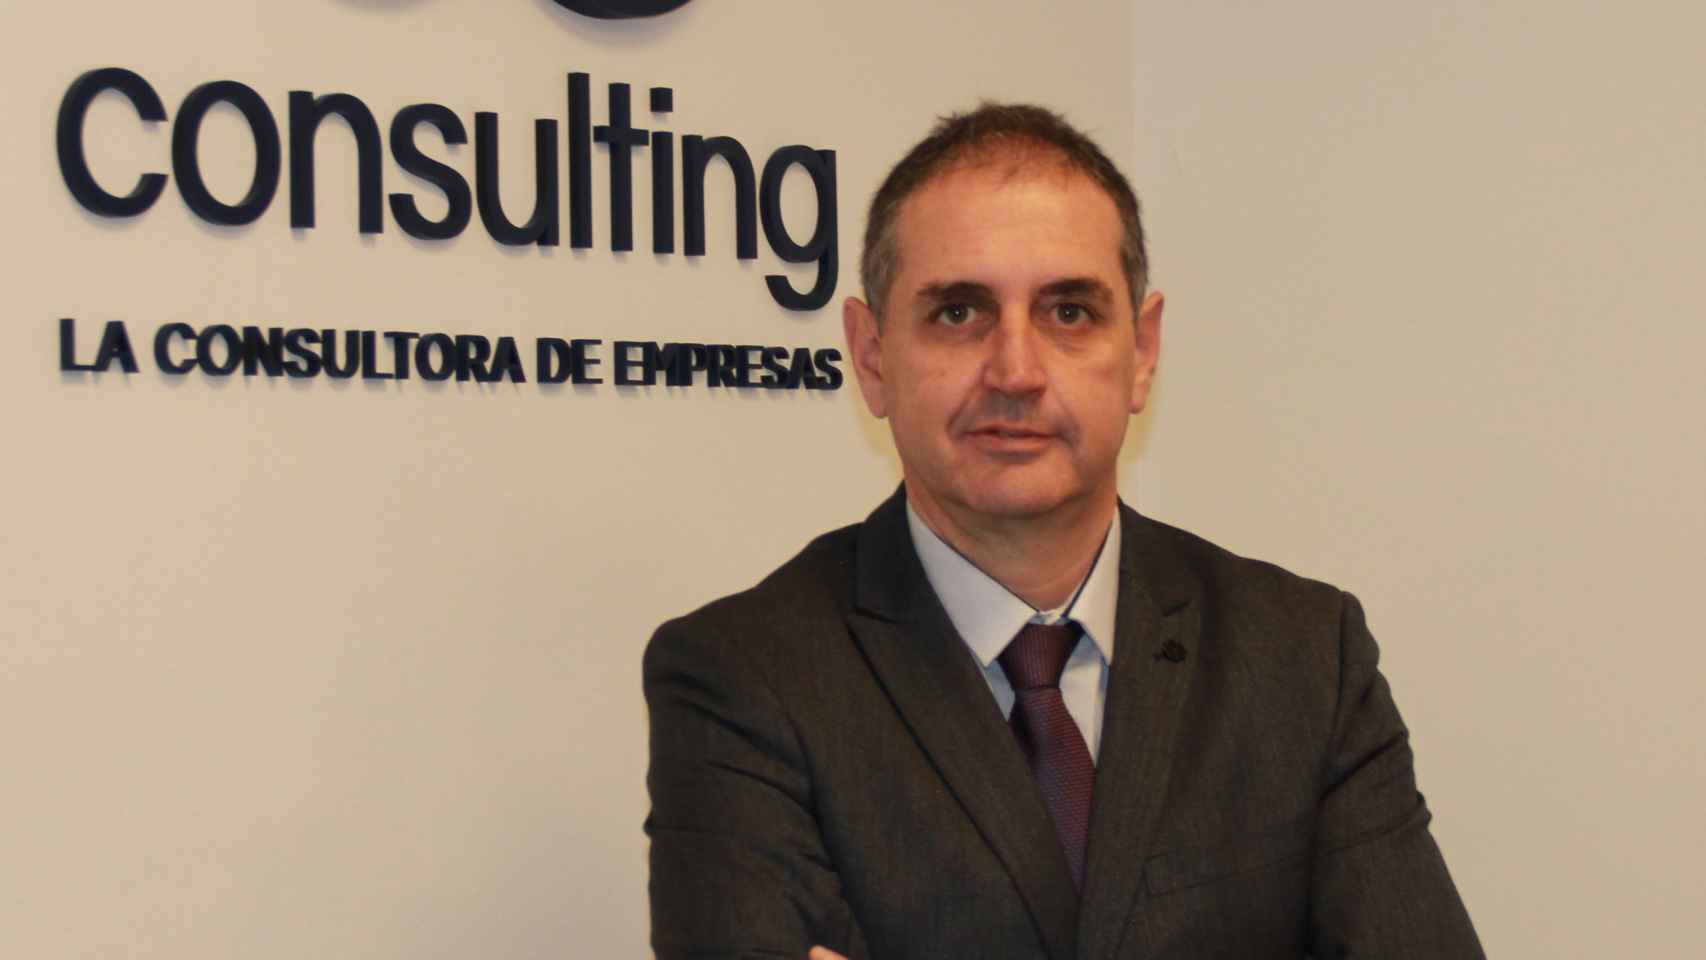 Luis Martín, CEO del grupo CE Consulting.